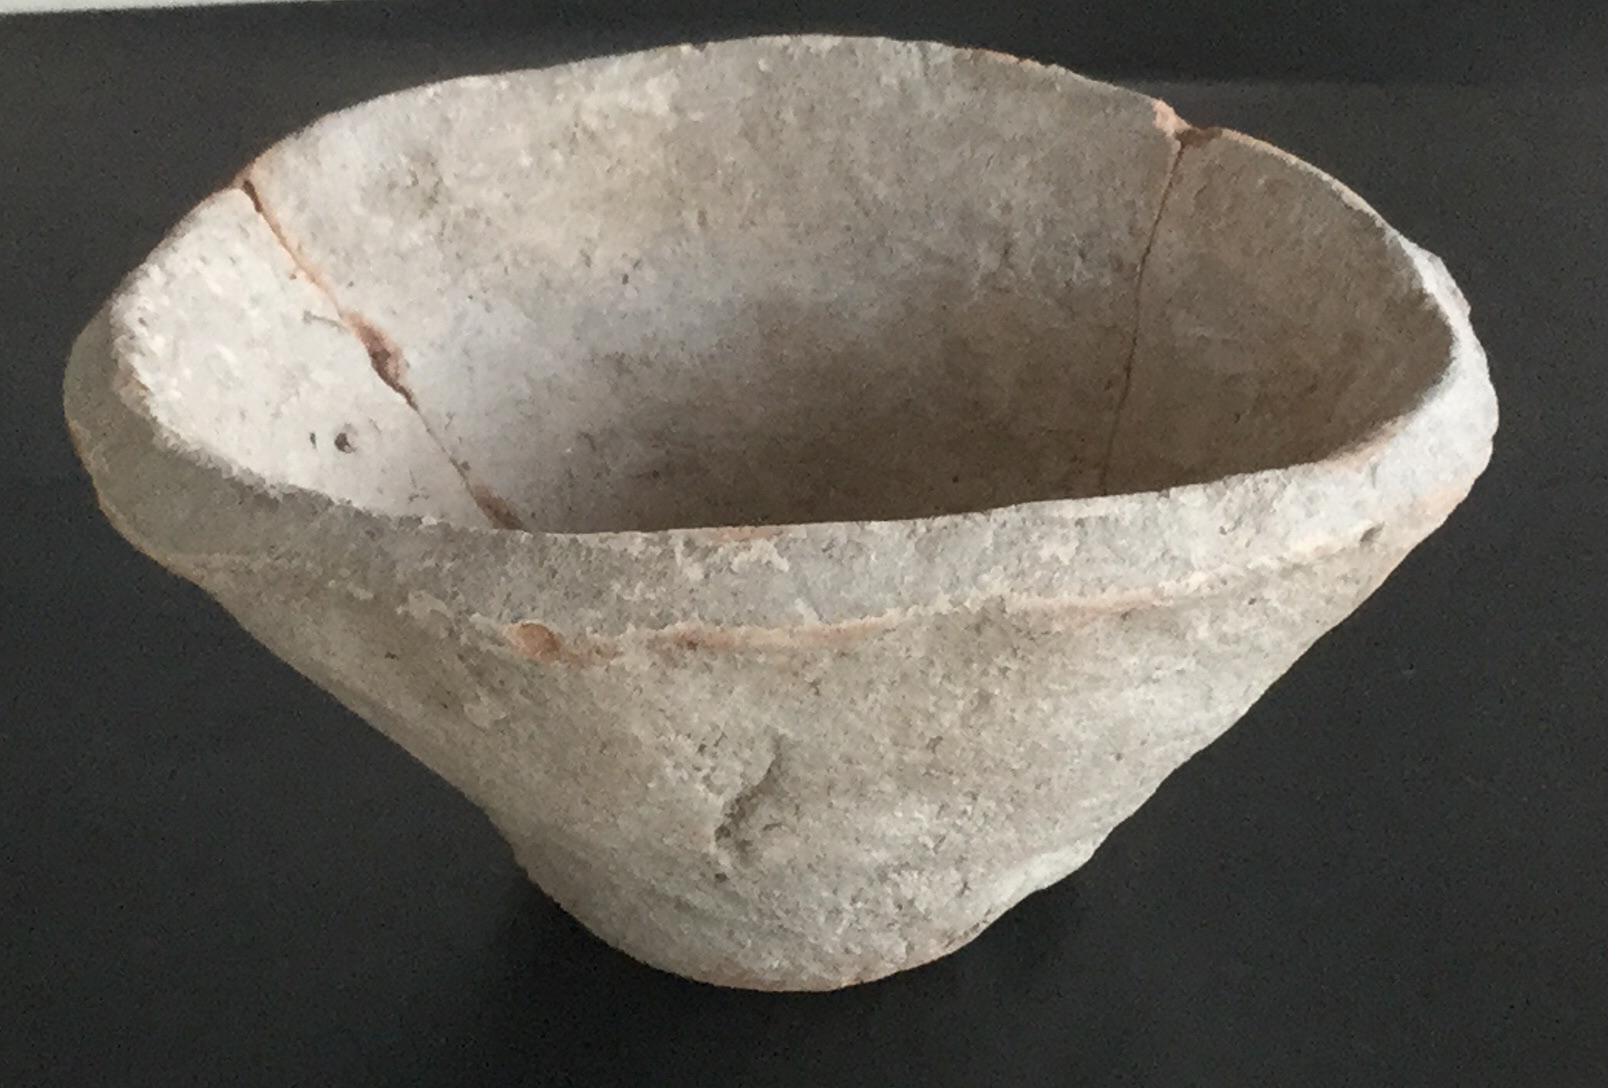  与中精心制作的碗和花瓶相比，乌鲁克最常见 的陶瓷制品是粗糙的“斜边碗”。但其并不像 它看起来的那样是退步了。乌鲁克繁荣昌盛， 它的陶工正忙于创造历史上第一个批量生产的 物品。//图片来源：Schauschgamuwa